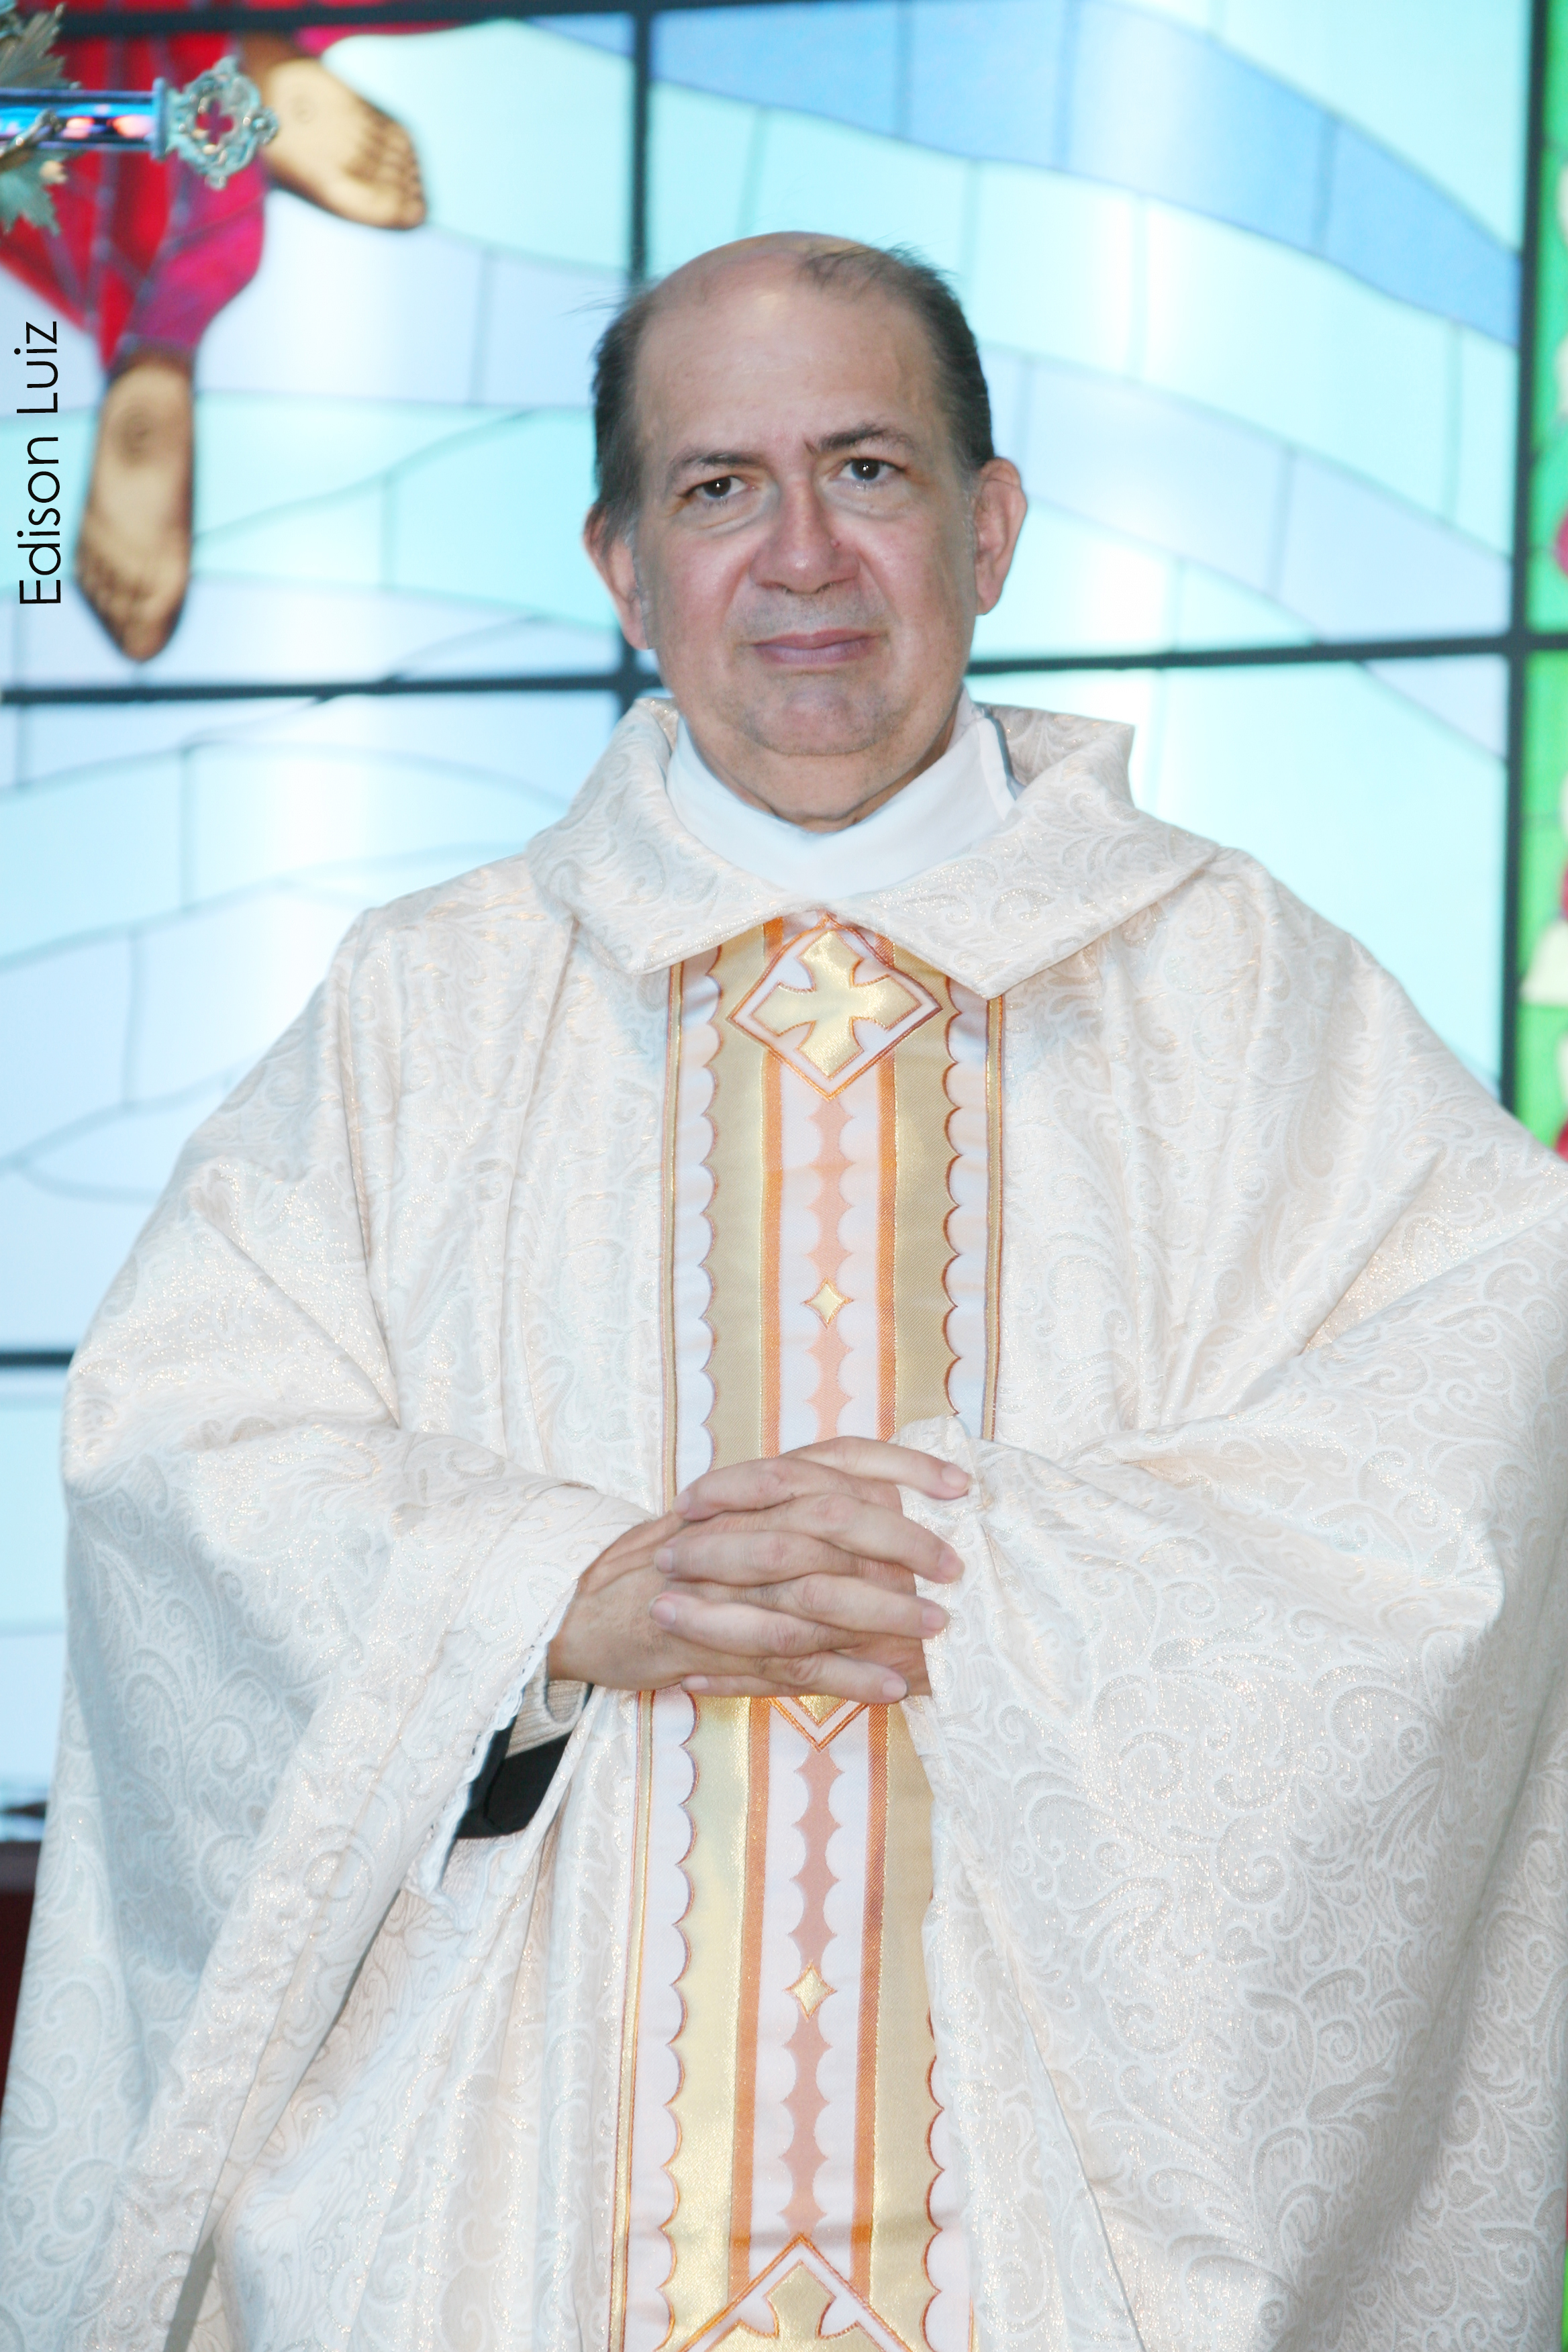 Padre Wilton de Moraes Lopes, fundador da Congregação da Copiosa Redenção, Cidadão Honorário do Paraná,
na última quinta-feira (27), recebeu as felicitações pela passagem
de seu aniversário. Da coluna RC os votos de pronto restabelecimento.